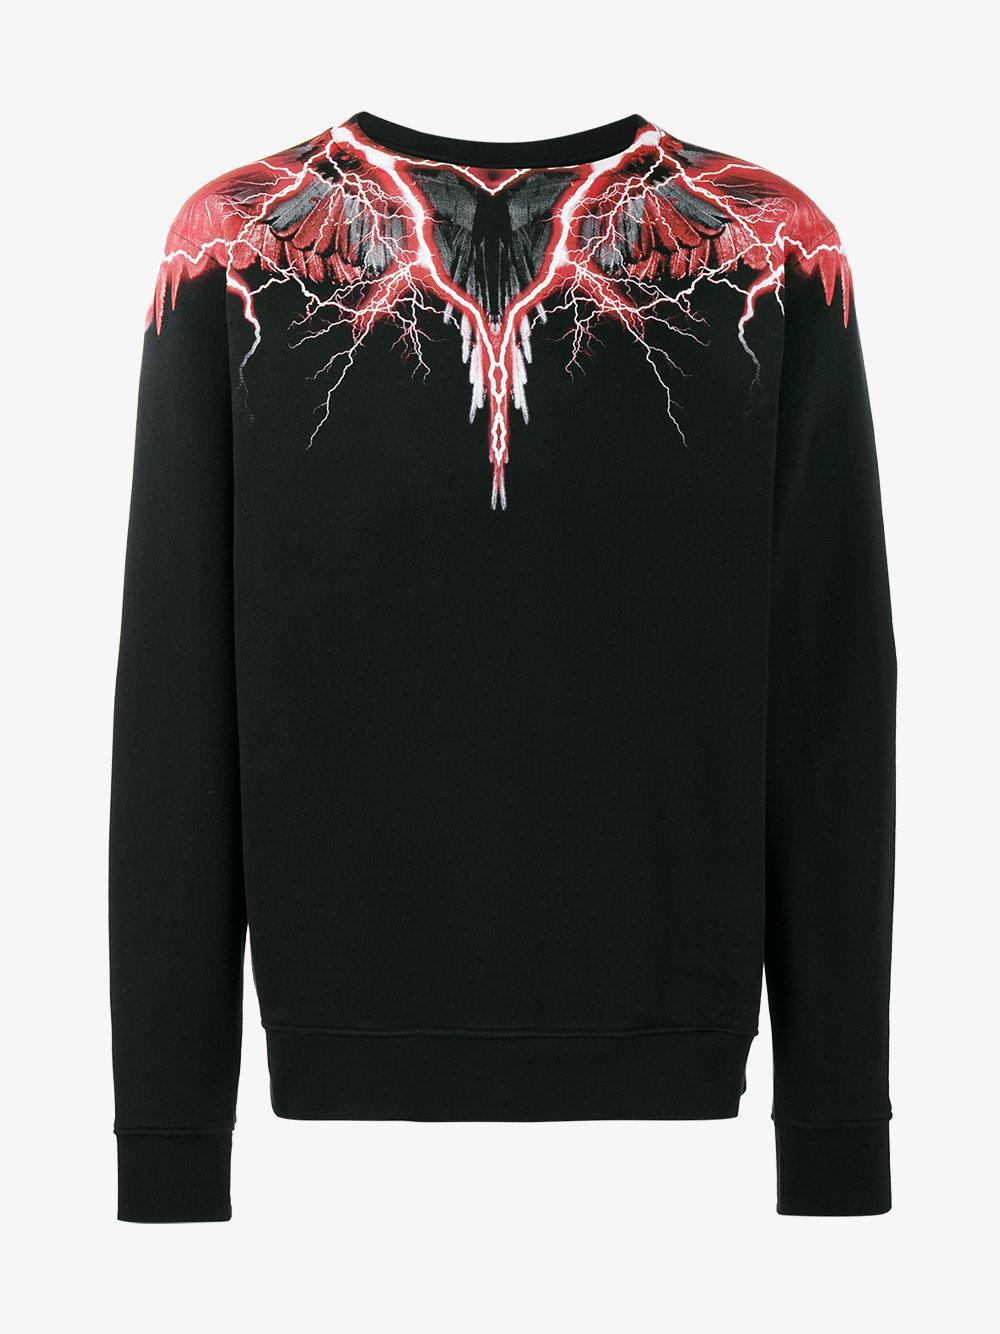 Marcelo Burlon Red Lightning Print Sweatshirt in Black for Men - Lyst